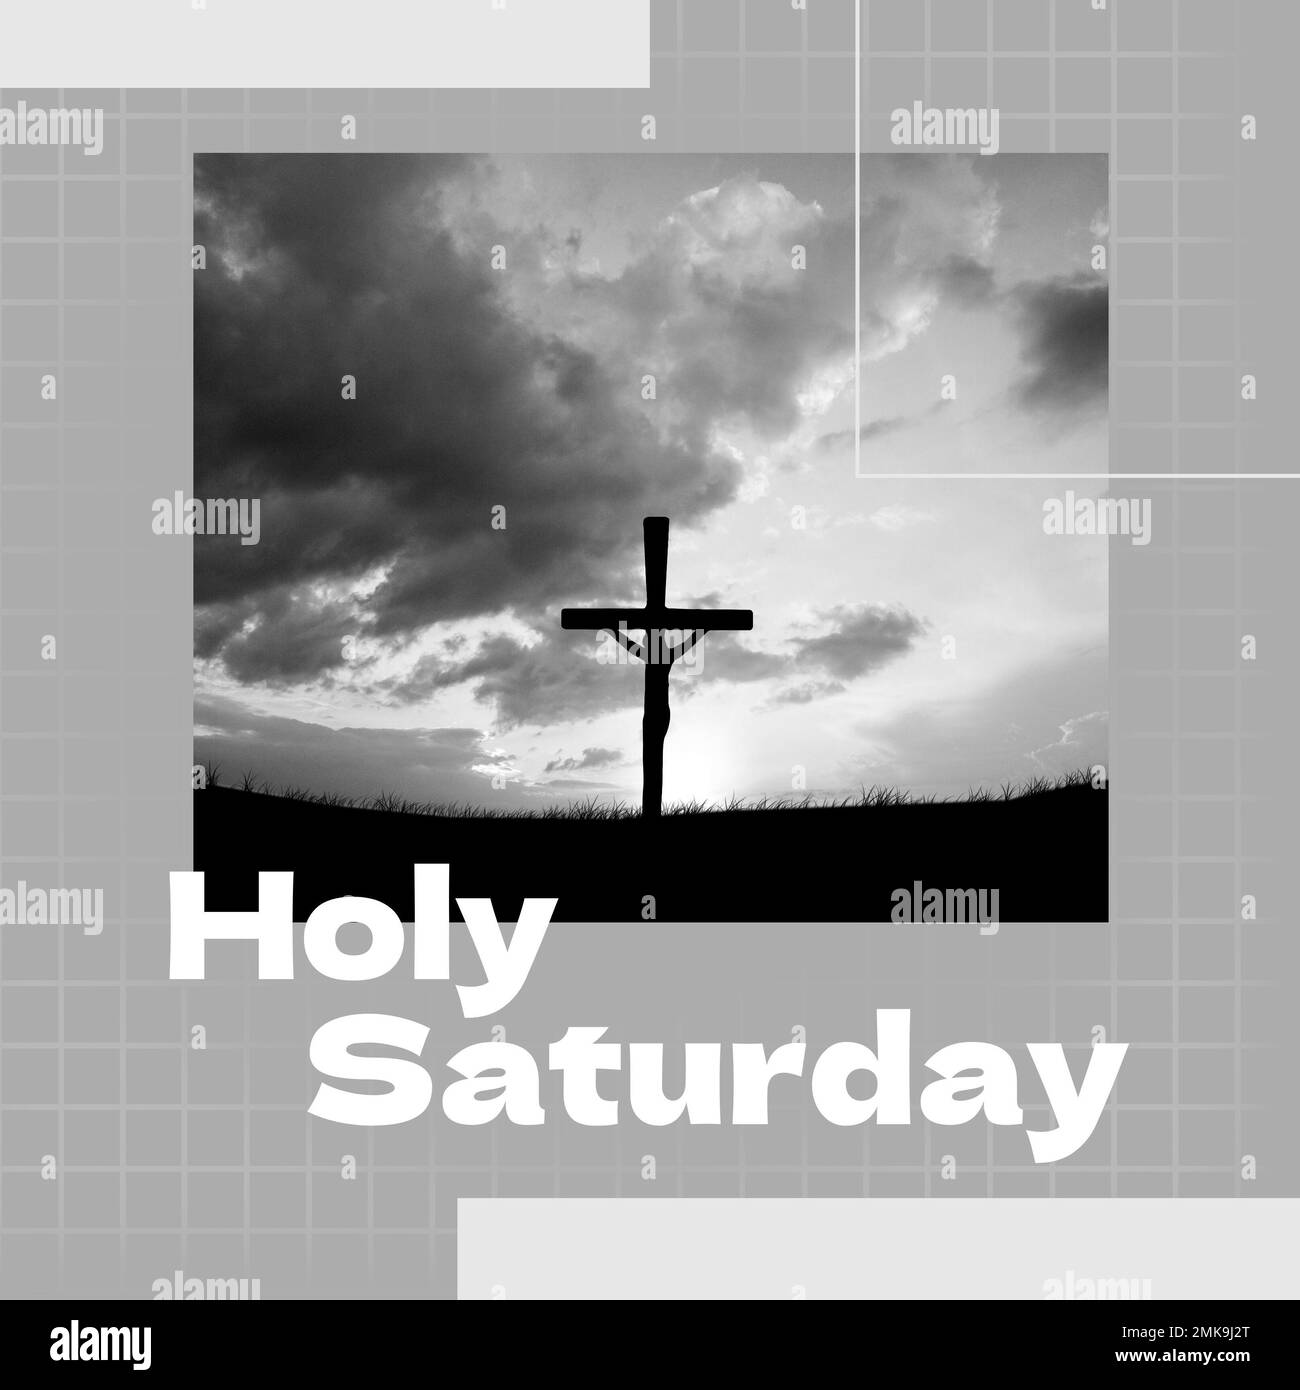 Komposition des heiligen samstagstextes und des christlichen Kreuzes Stockfoto